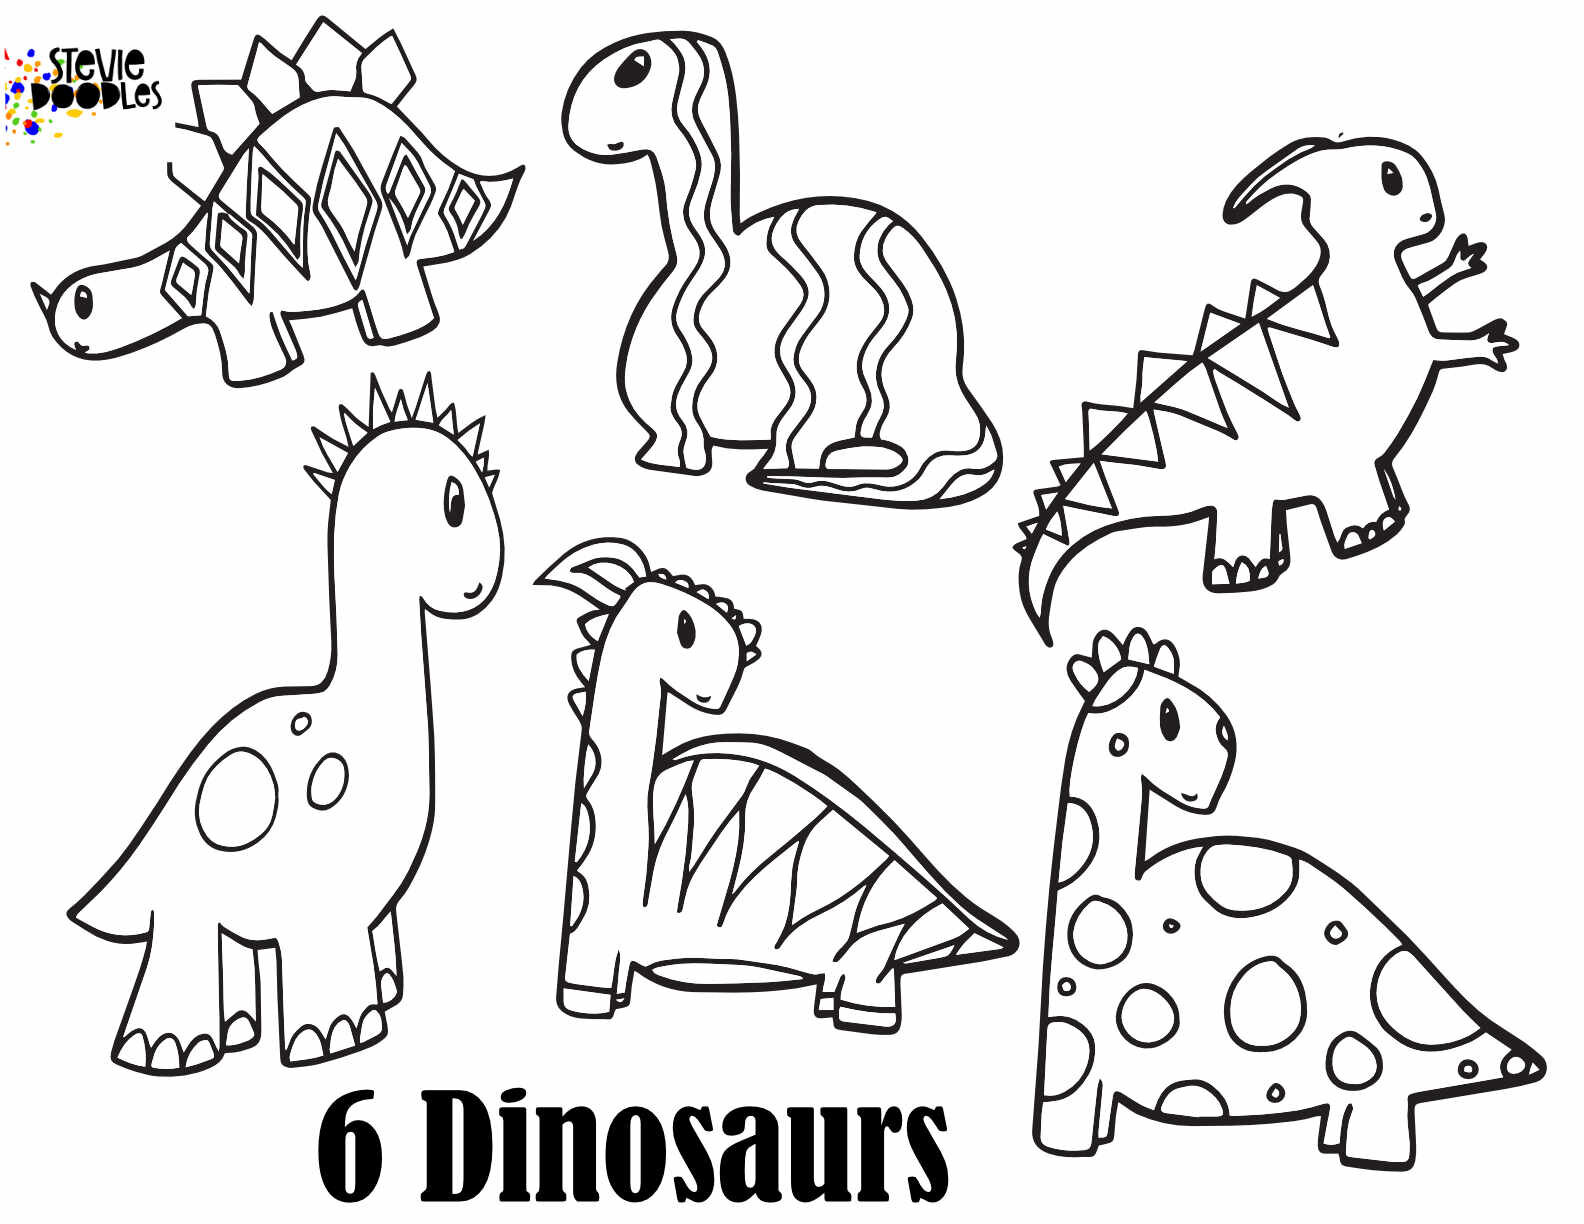 DINOSAUR NUMBERS - Free Numbers 1 - 10 printable dinosaur coloring